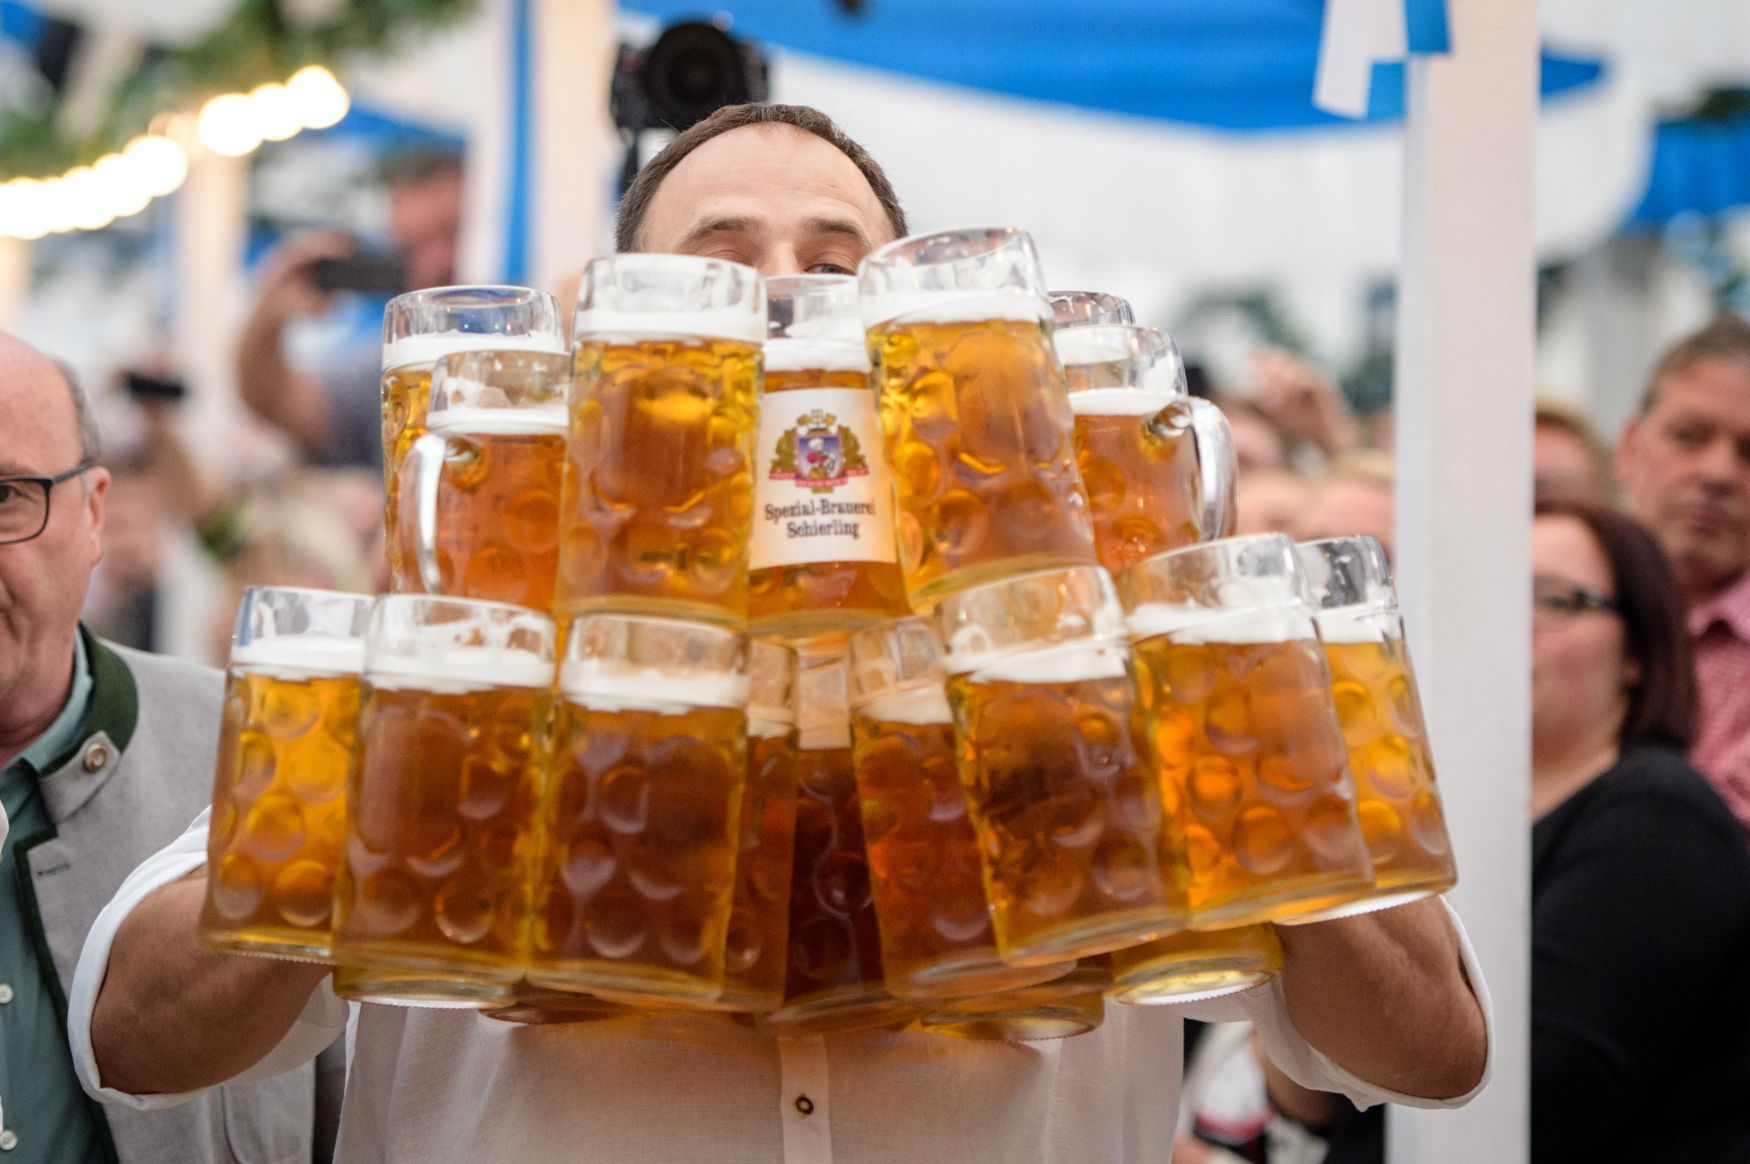 Německo Bavorsko pivo tupláky rekord